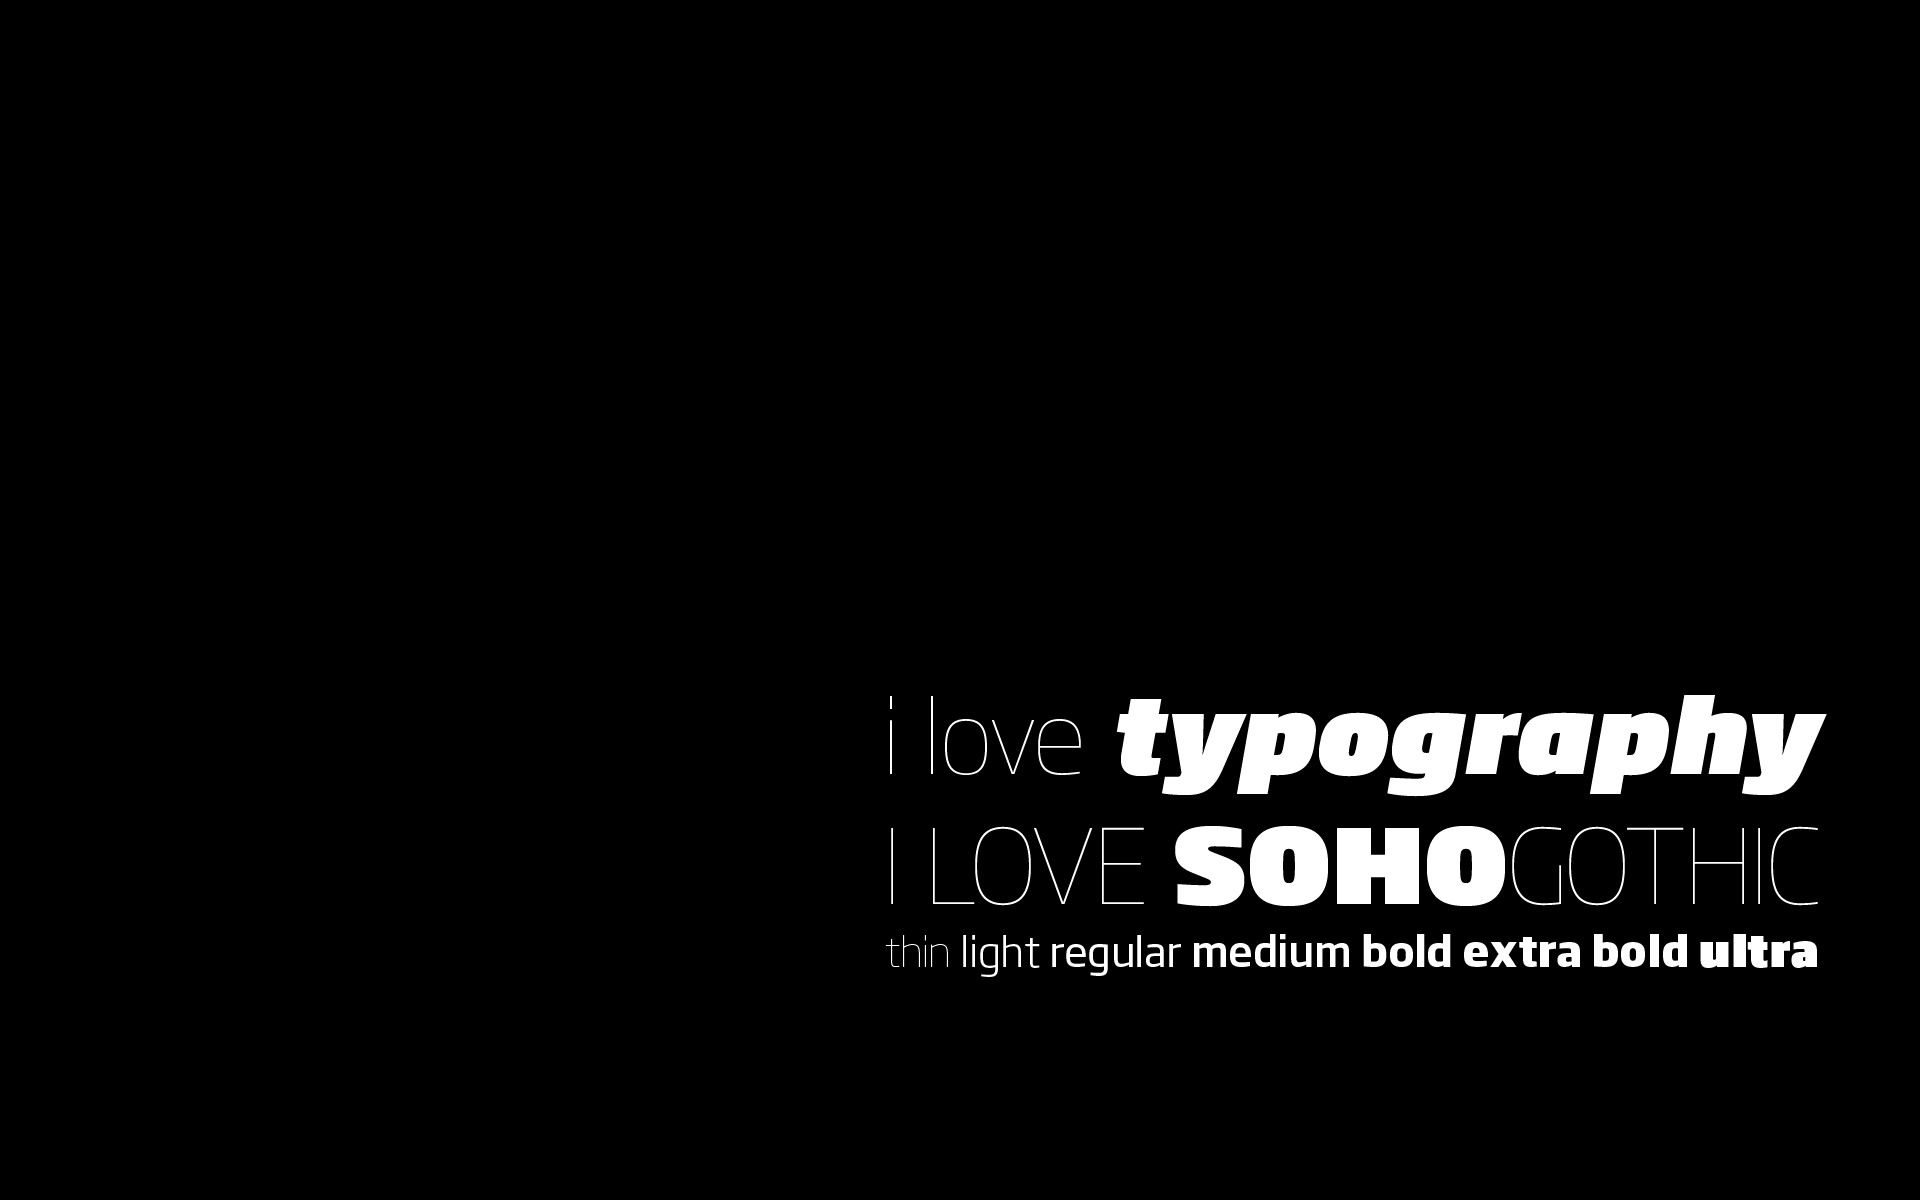     :: I love typography ::  1